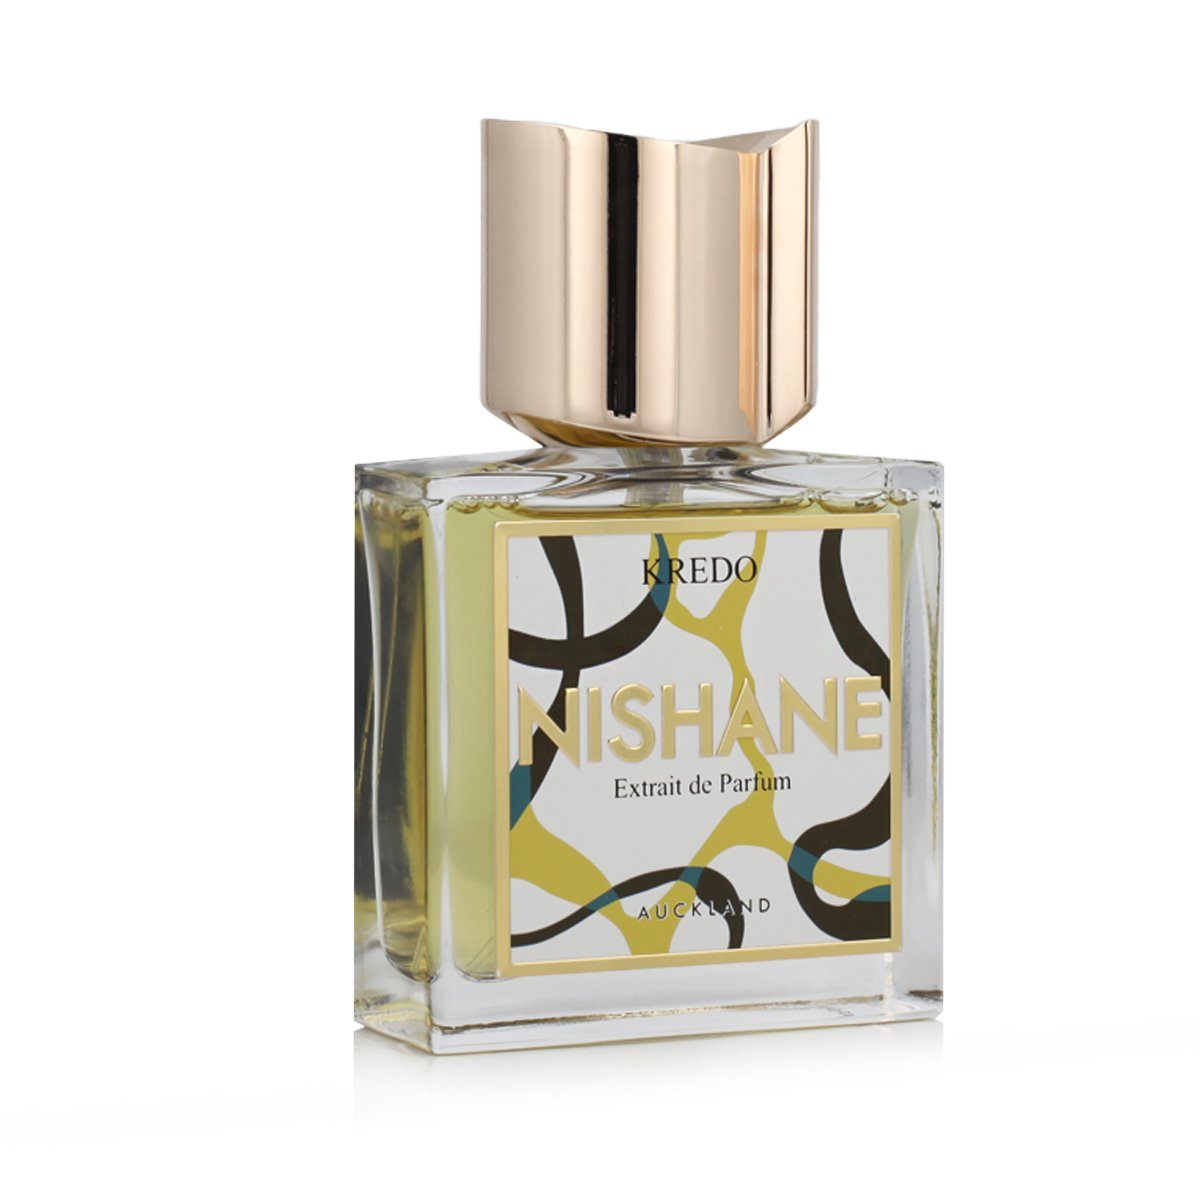 Nishane Extrait Parfum Kredo